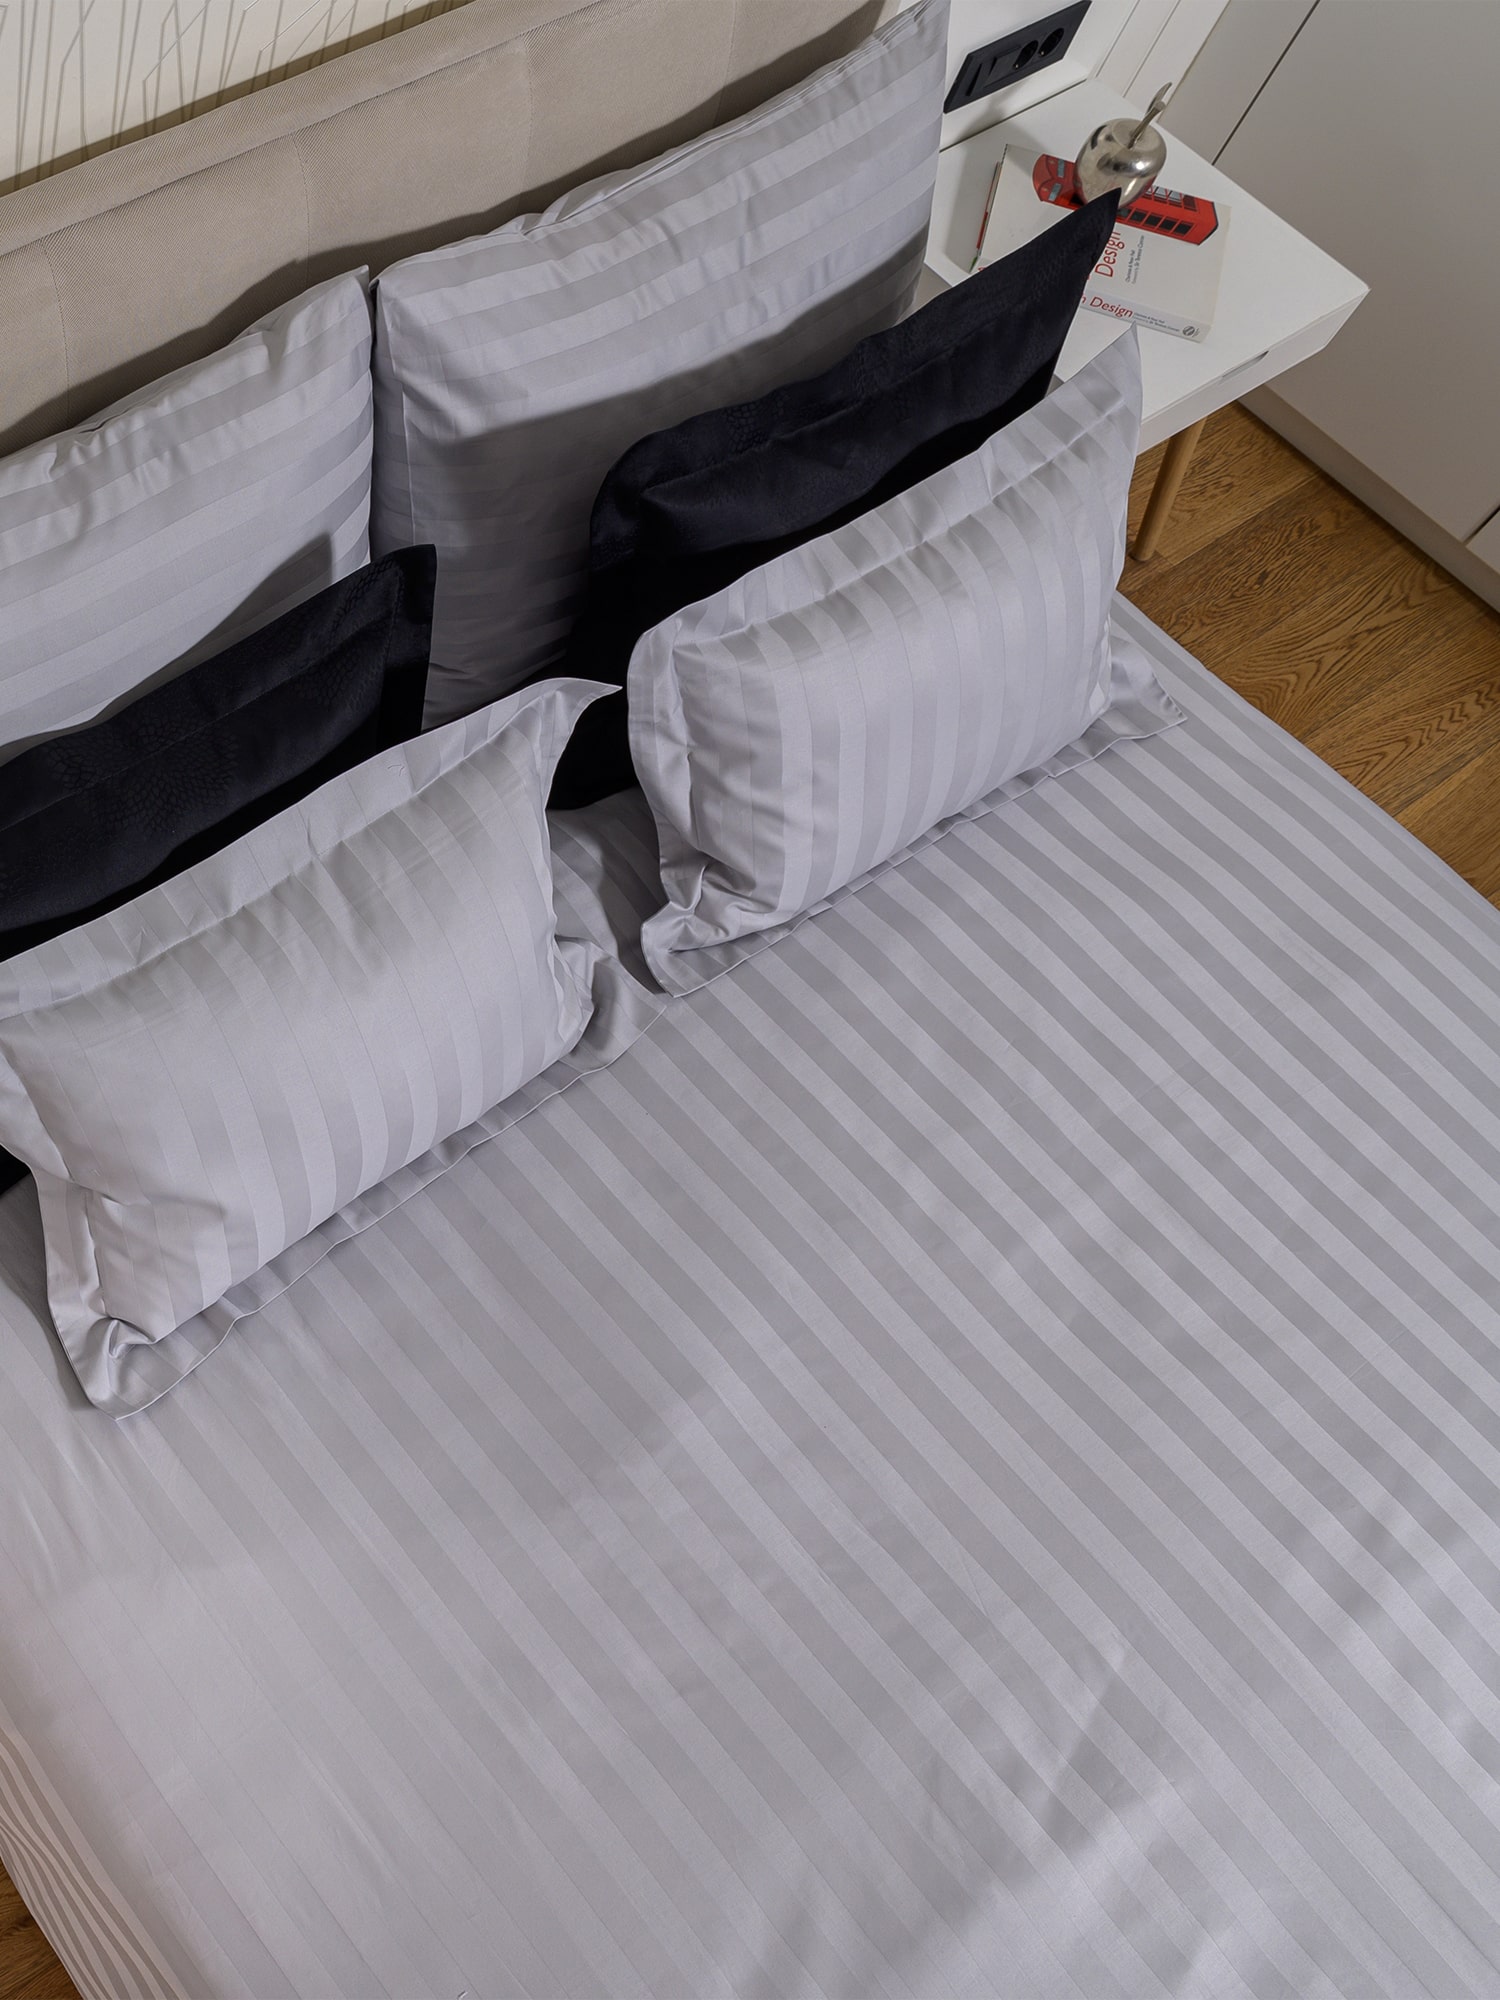 posteljina srebrna siva pruge damast 100 posto pamuk sjajna posteljina za apartmane